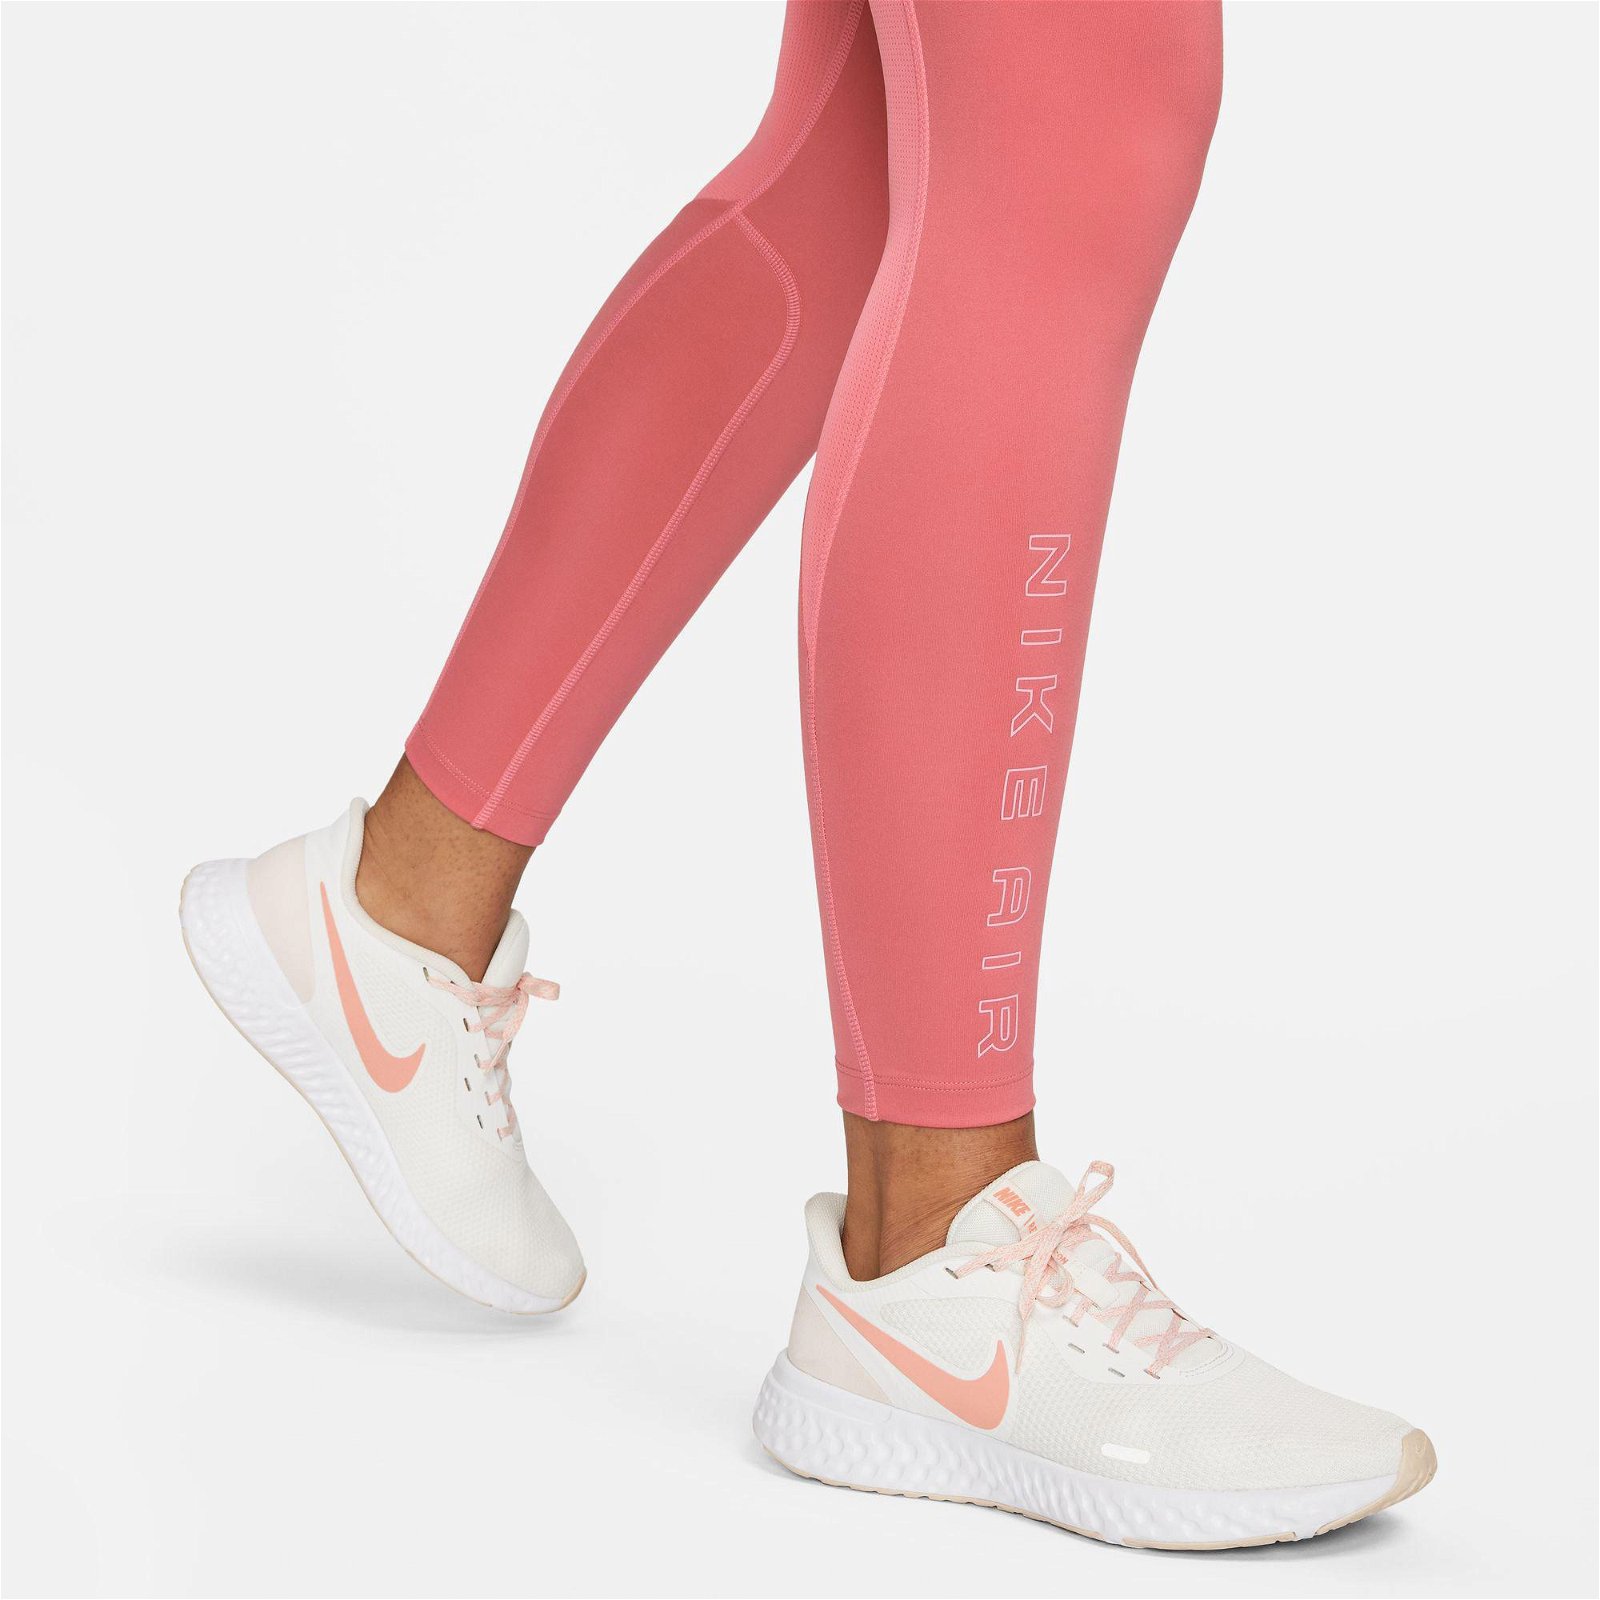 Nike Dri-Fit Air Mid Rise 7/8 Kadın Pembe Tayt